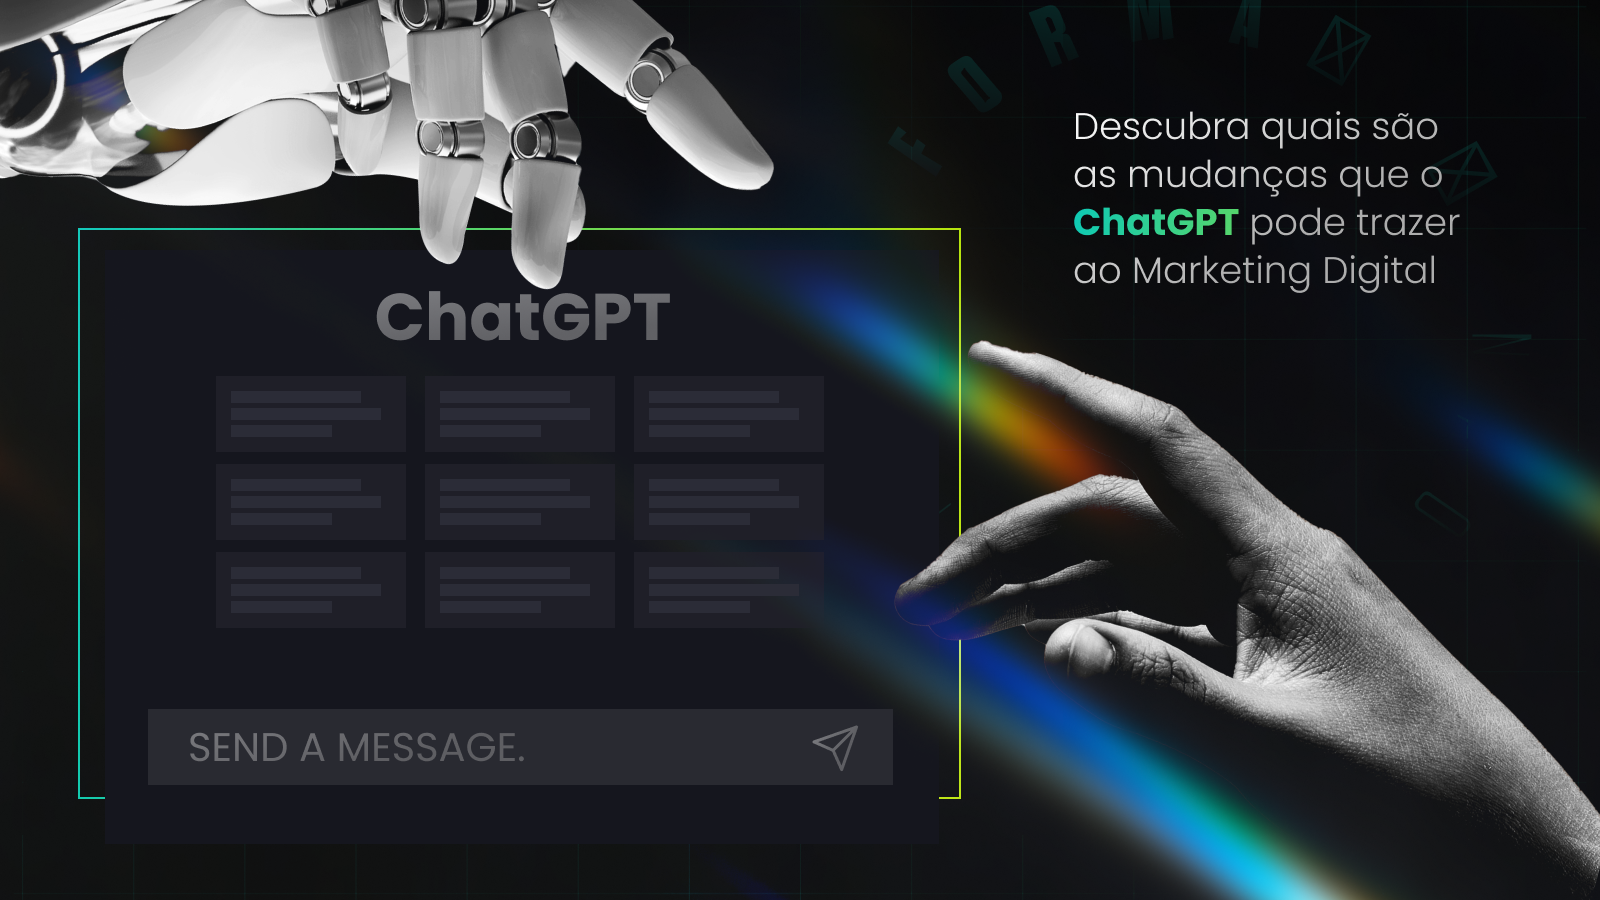 Degrau Publicidade | Descubra quais são as mudanças que o ChatGPT podem trazer ao Marketing Digital